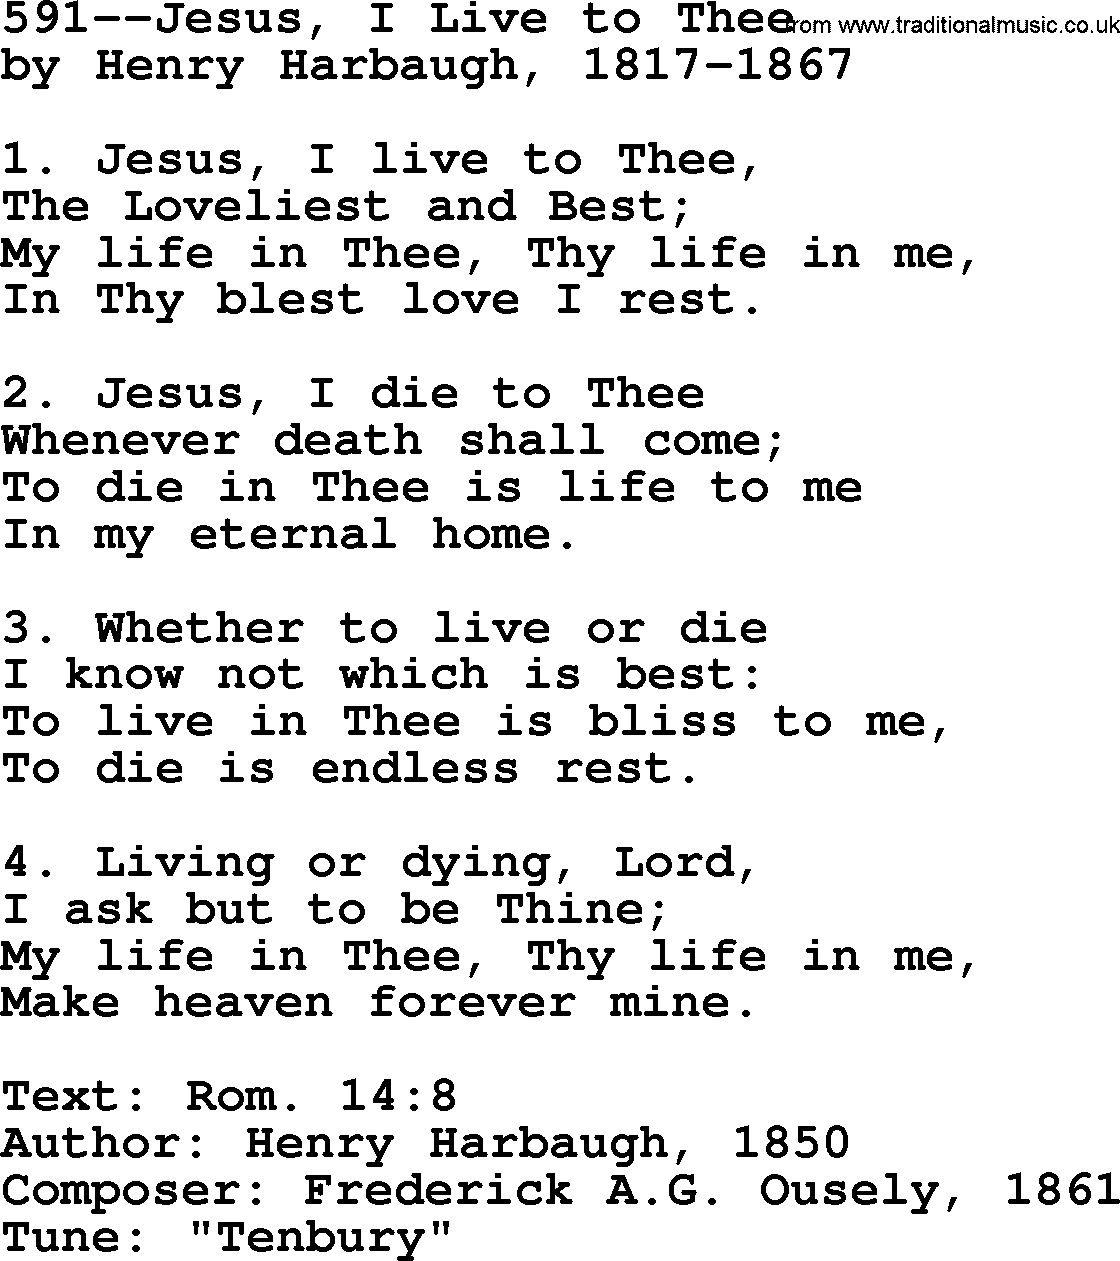 Lutheran Hymn: 591--Jesus, I Live to Thee.txt lyrics with PDF